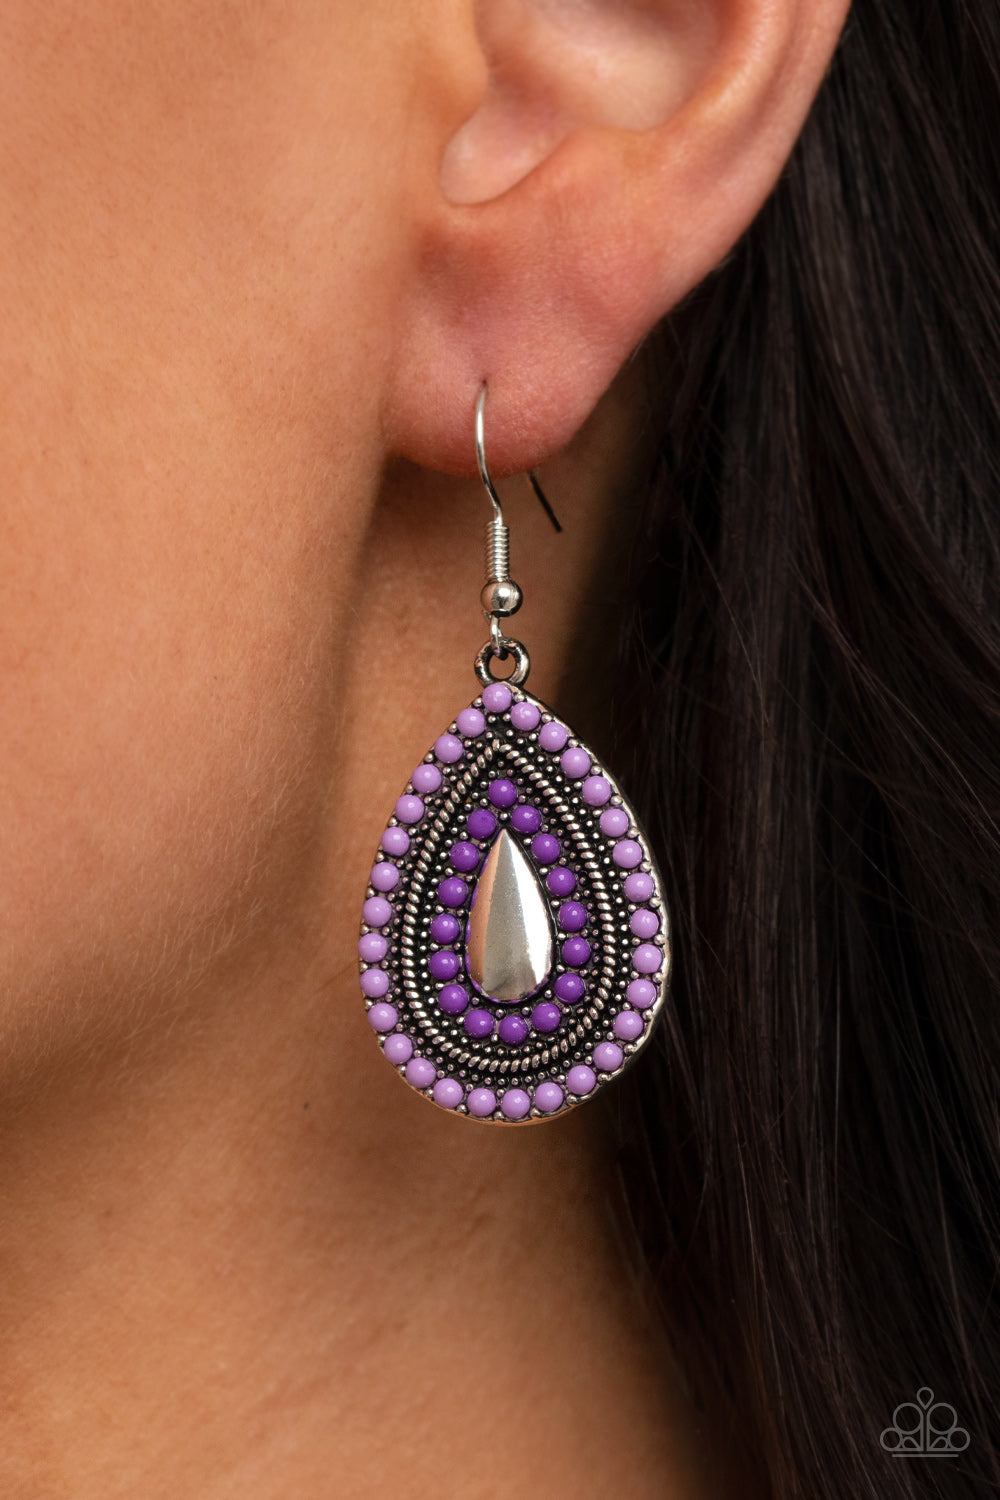 Beaded Bonanza - purple - Paparazzi earrings